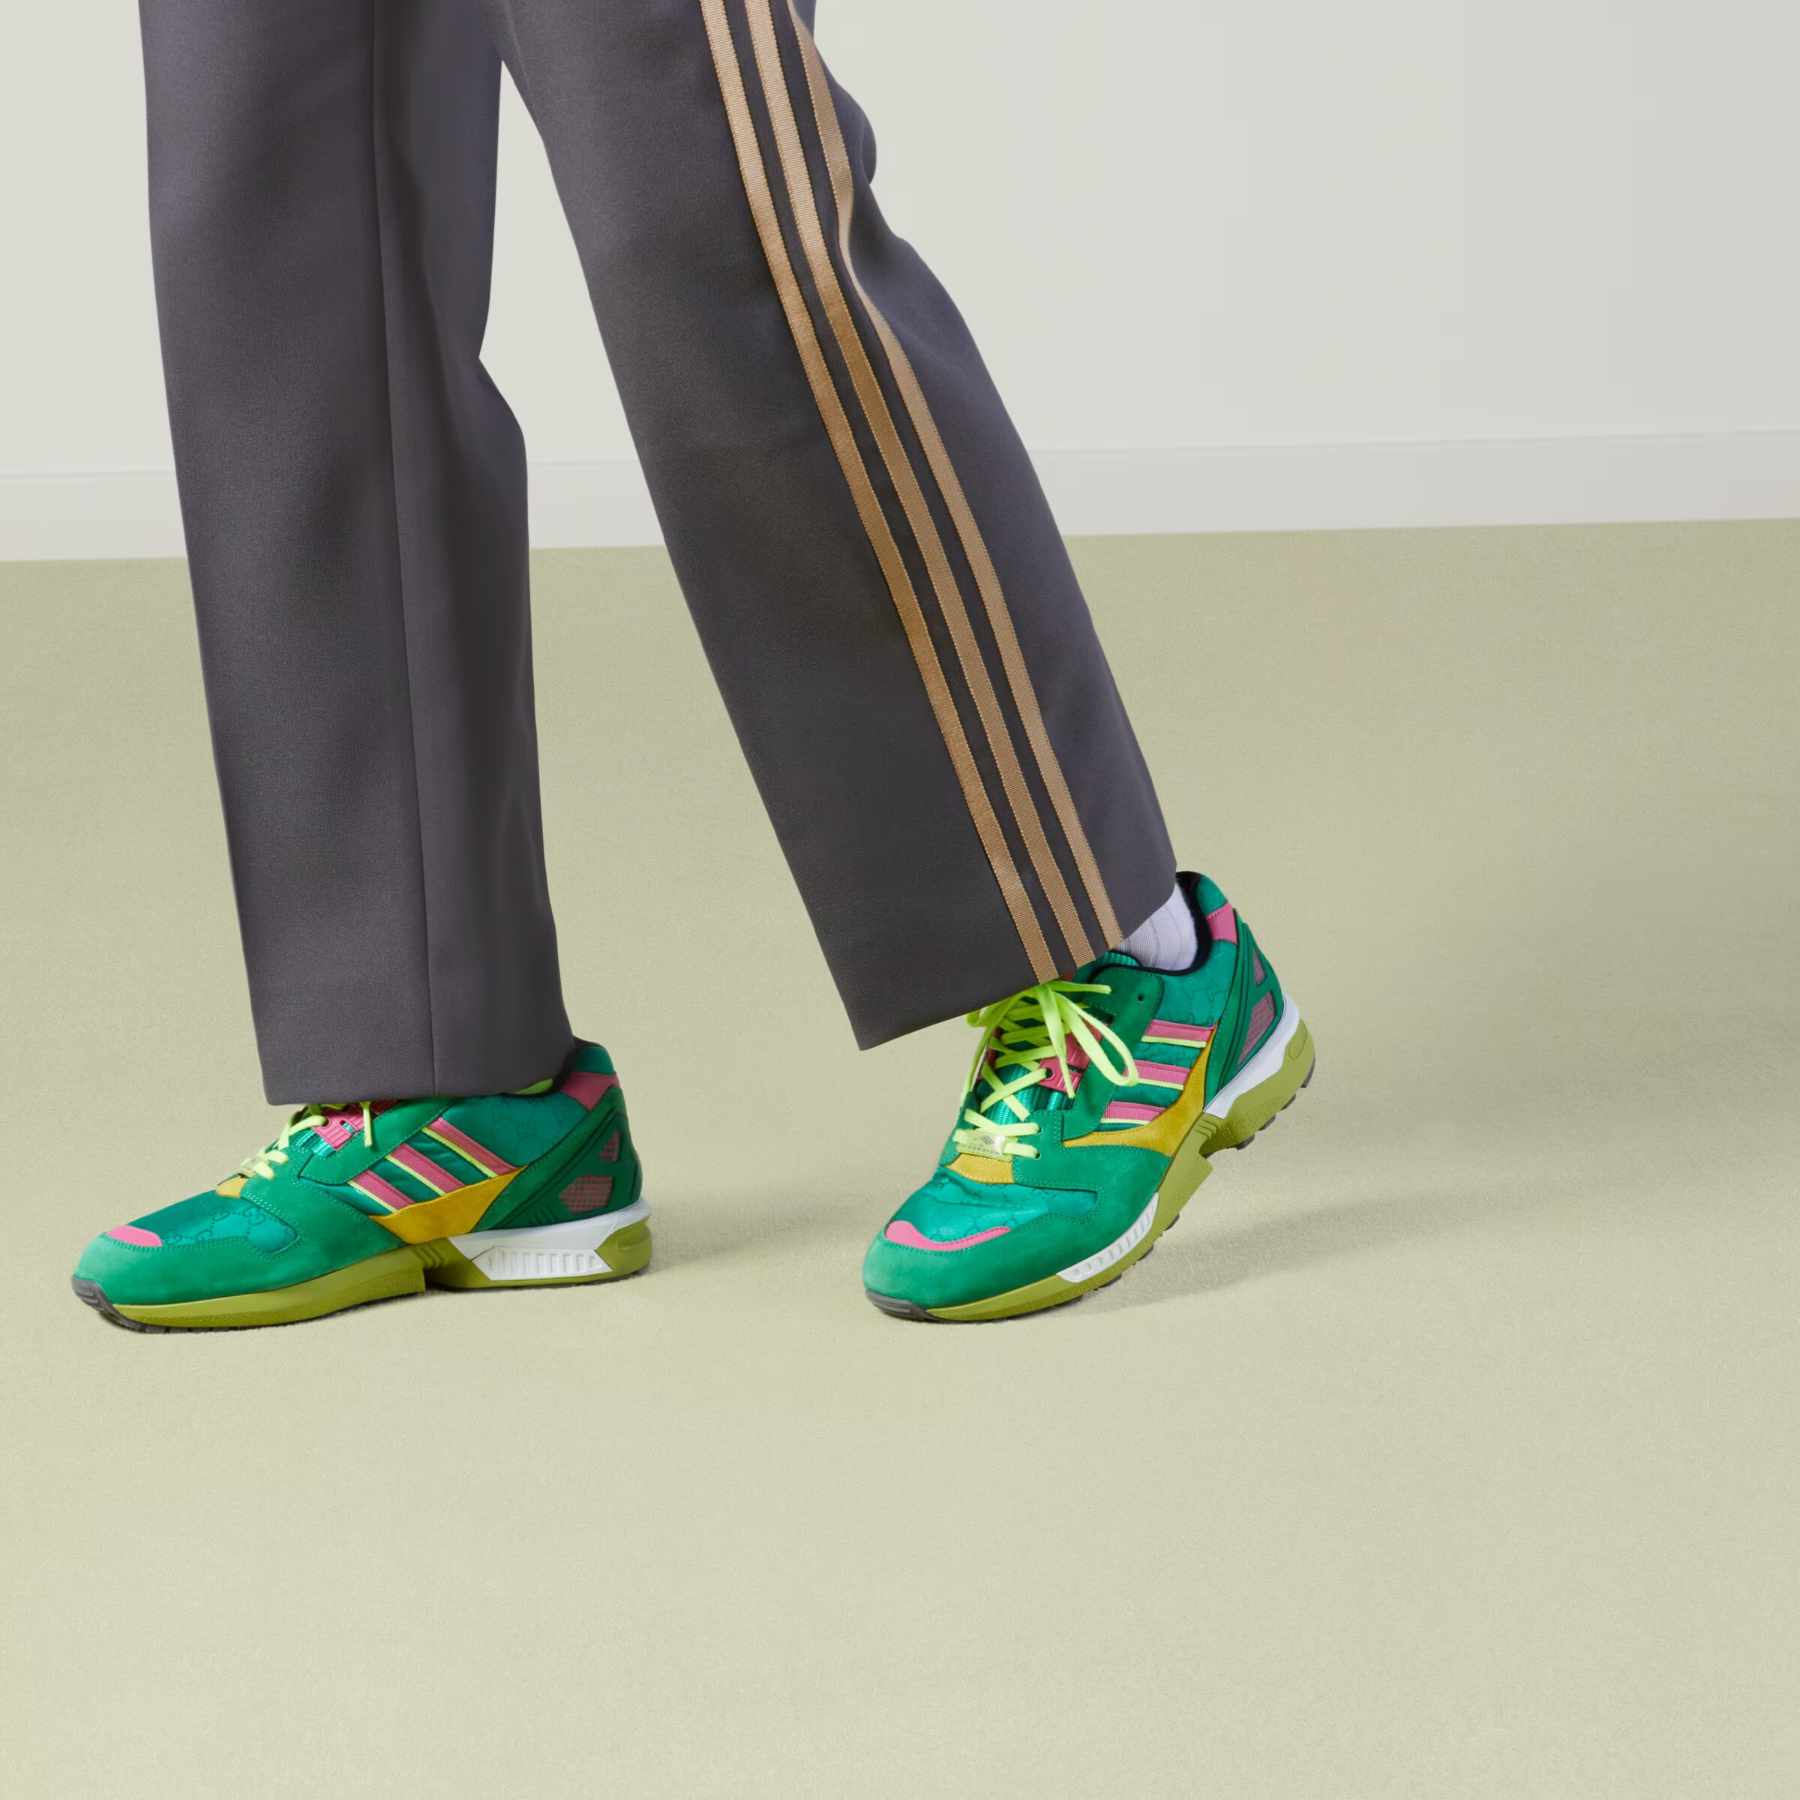 Spreekwoord september Literatuur adidas & Gucci Drop Second Sneaker-Focused Collab